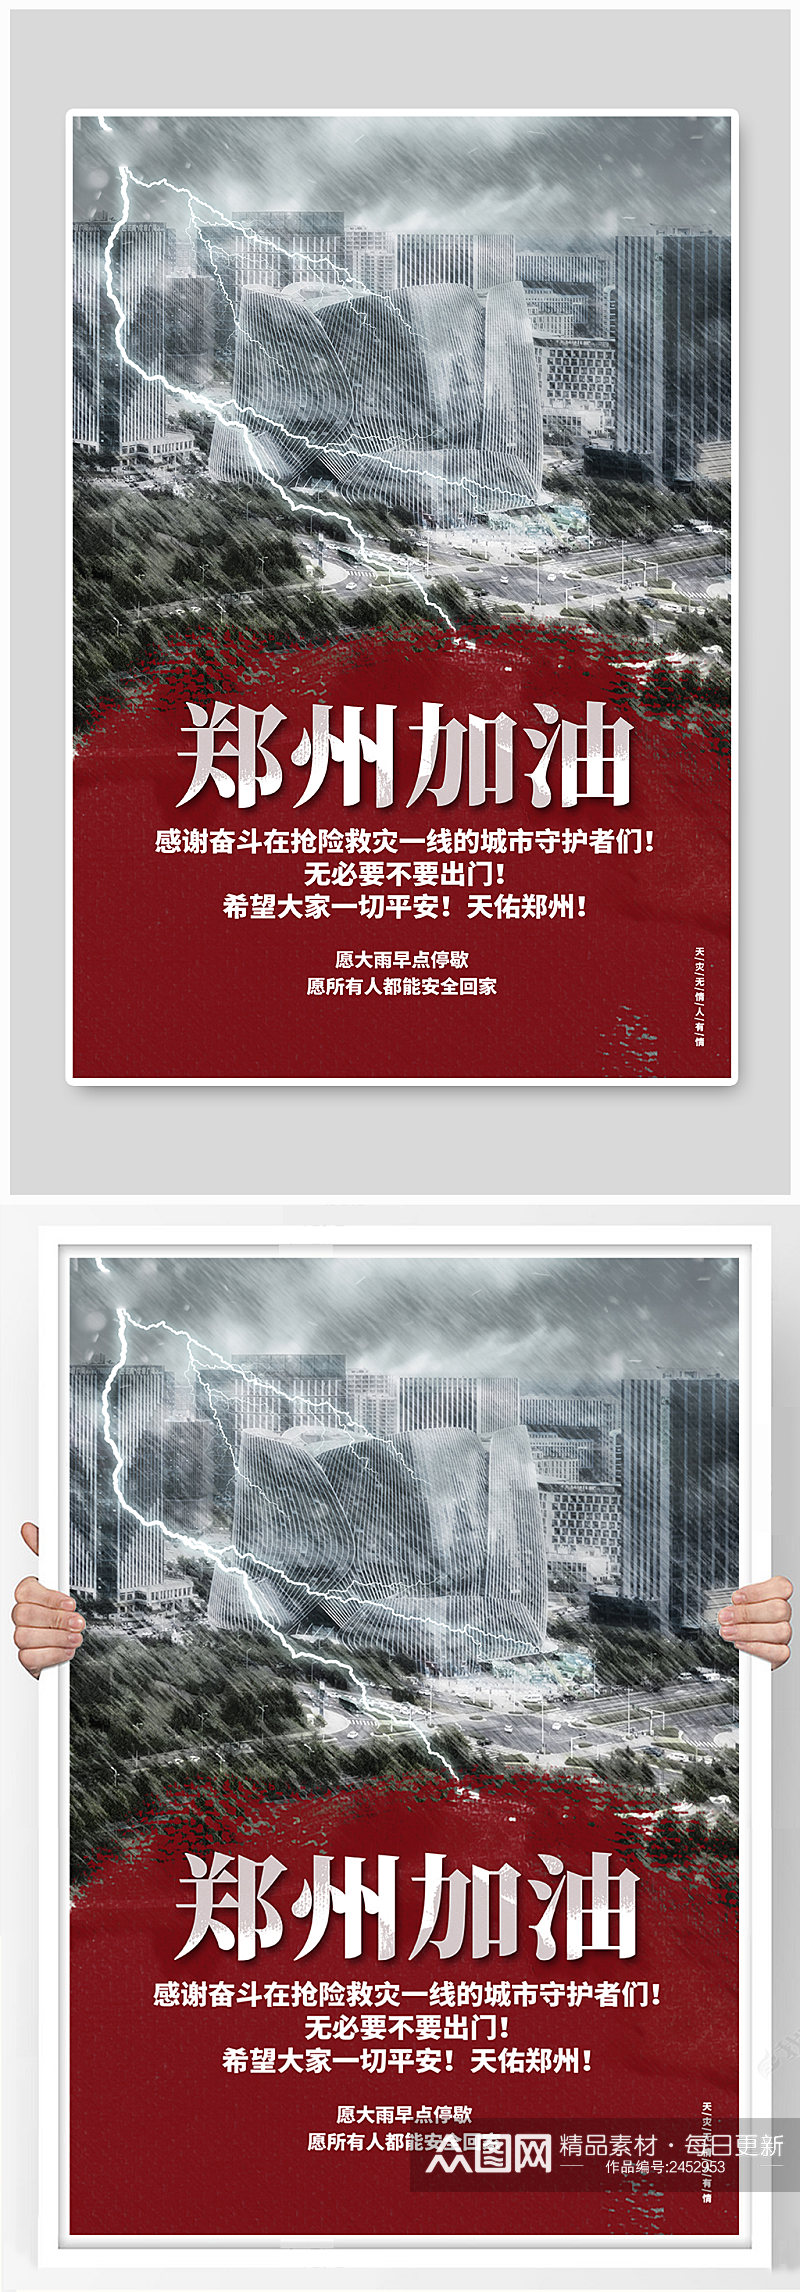 郑州加油河南加油抗洪救灾公益宣传海报素材